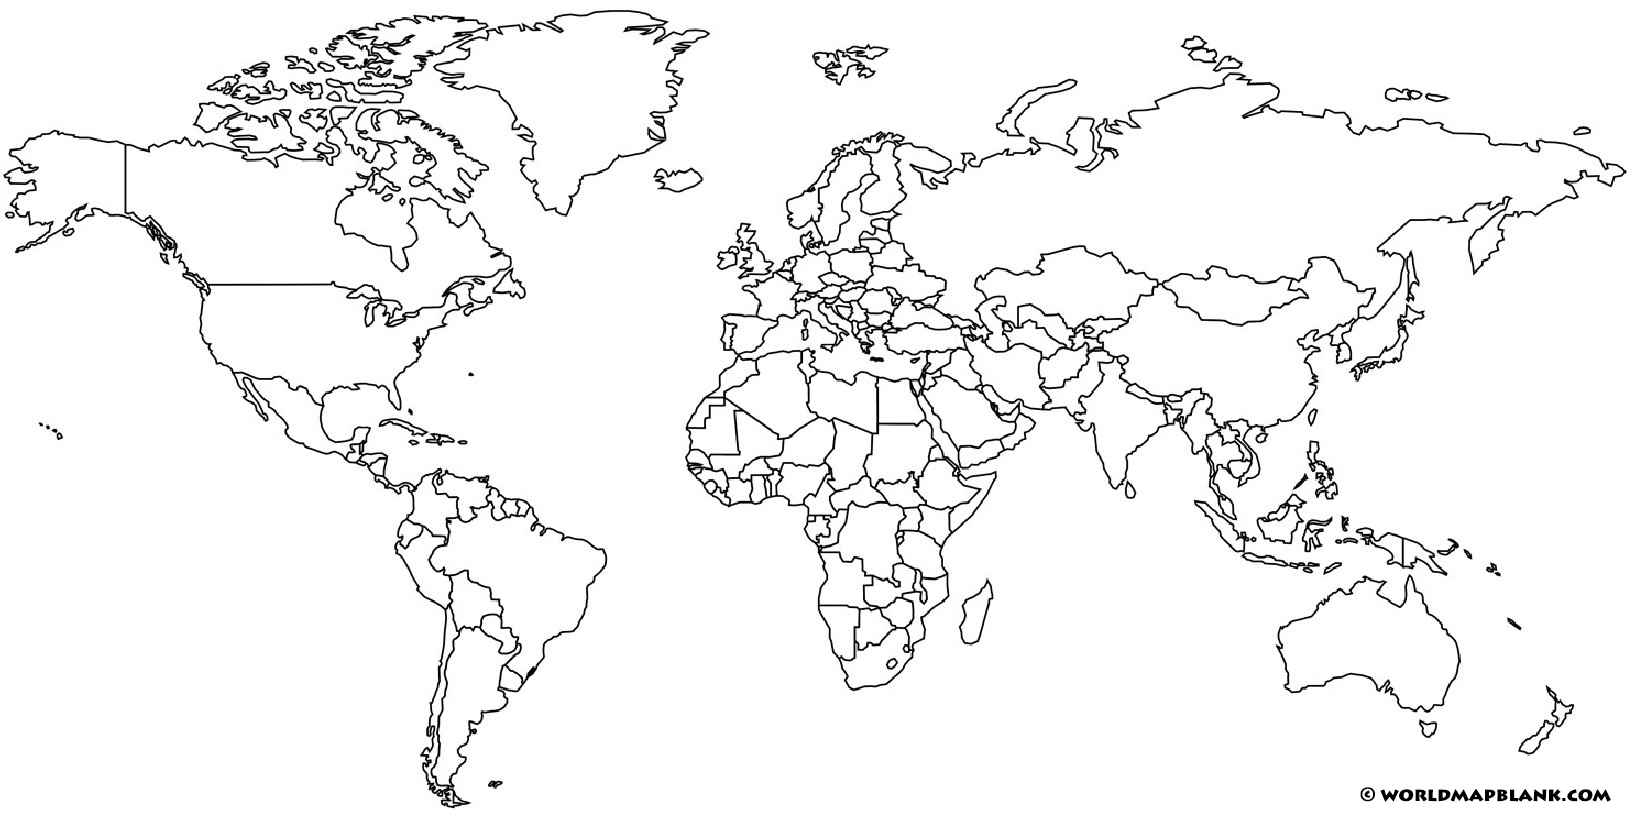 Mapa-múndi em branco com fronteiras